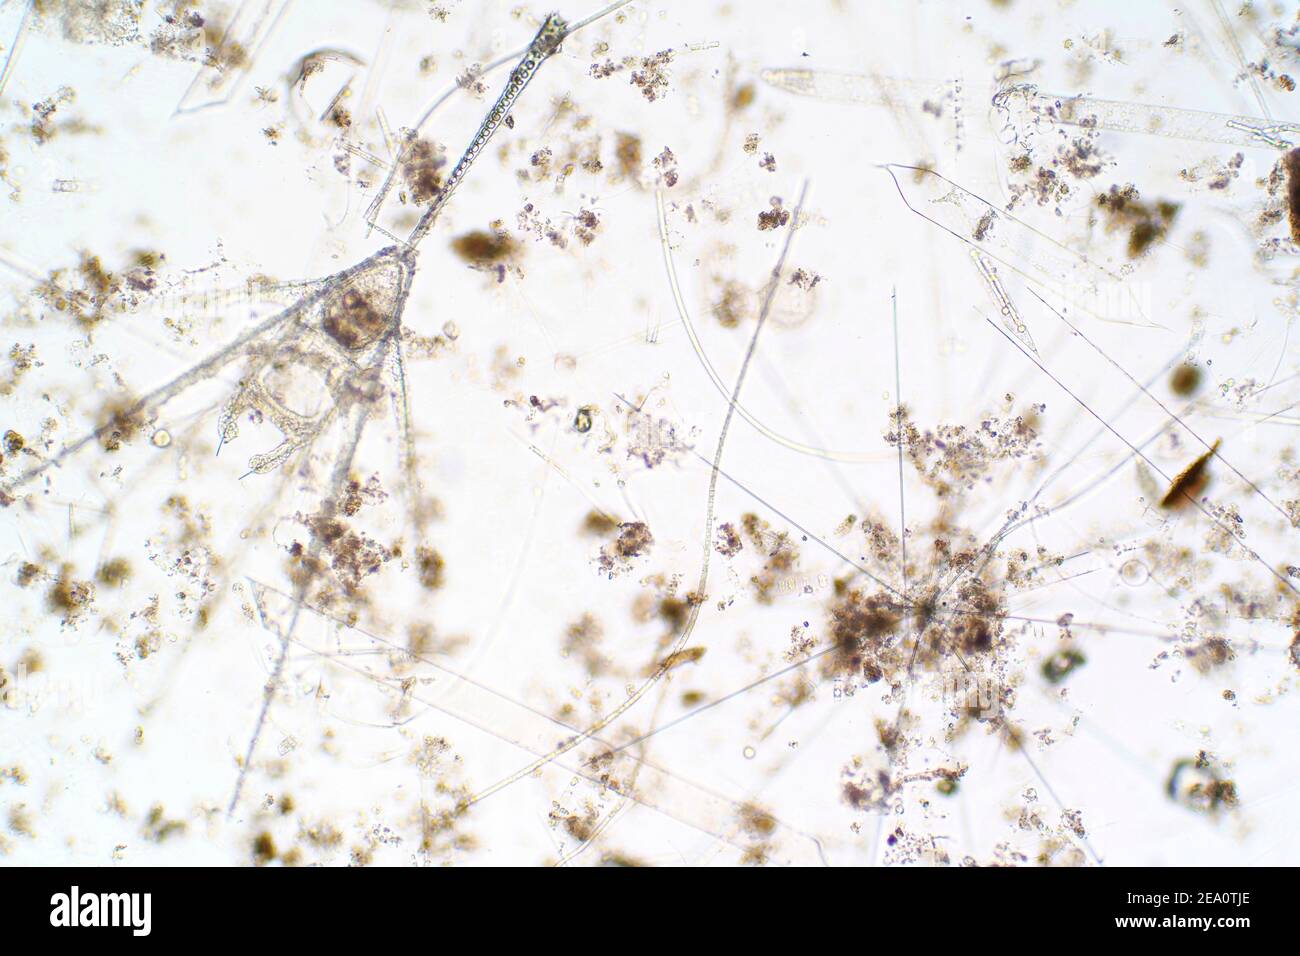 Plancton marino, micrografía ligera Foto de stock